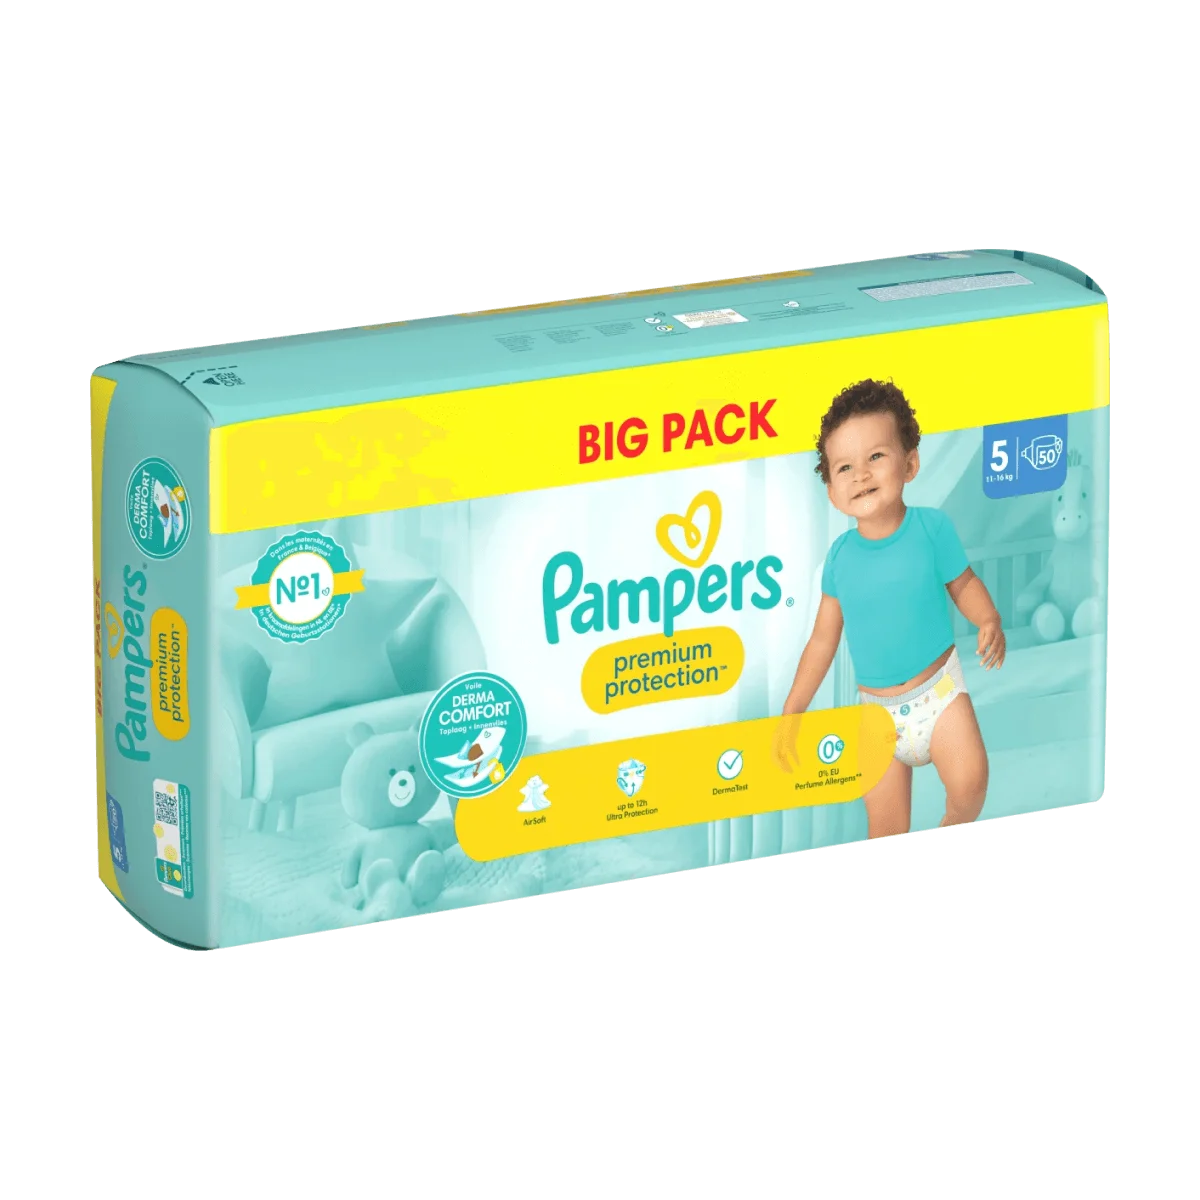 Pampers Windeln Premium Protection Gr. 5 Junior (11-16 kg), Big Pack, 50 Stk